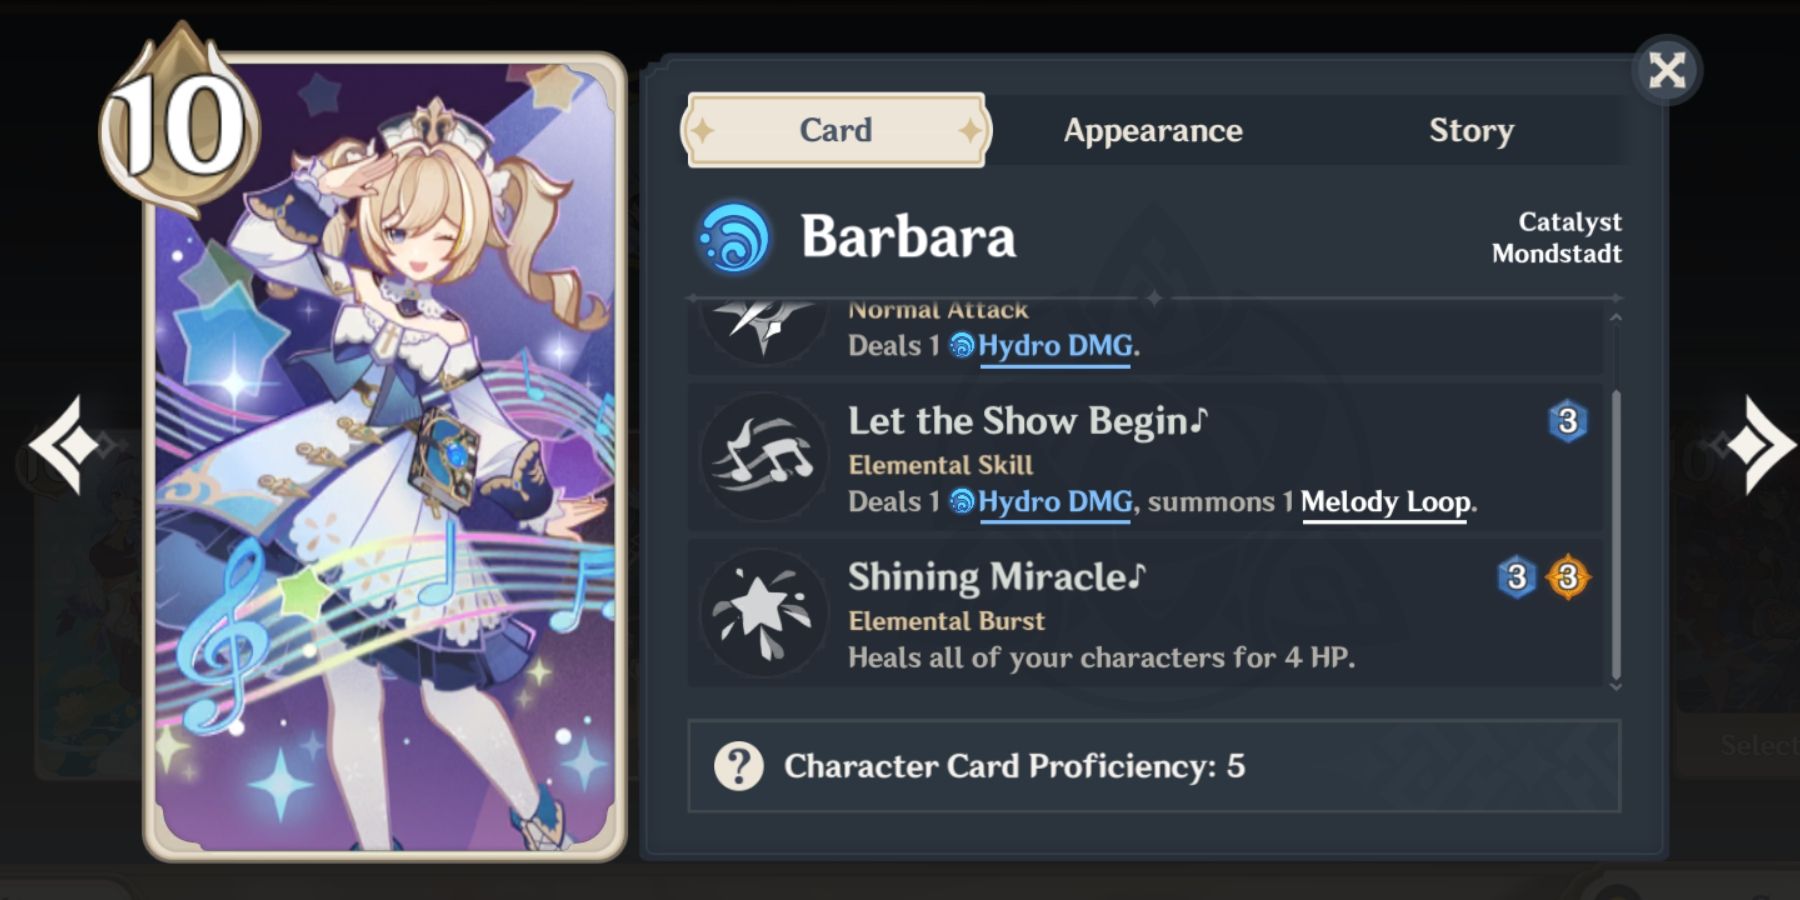 Barbara card in genshin impact